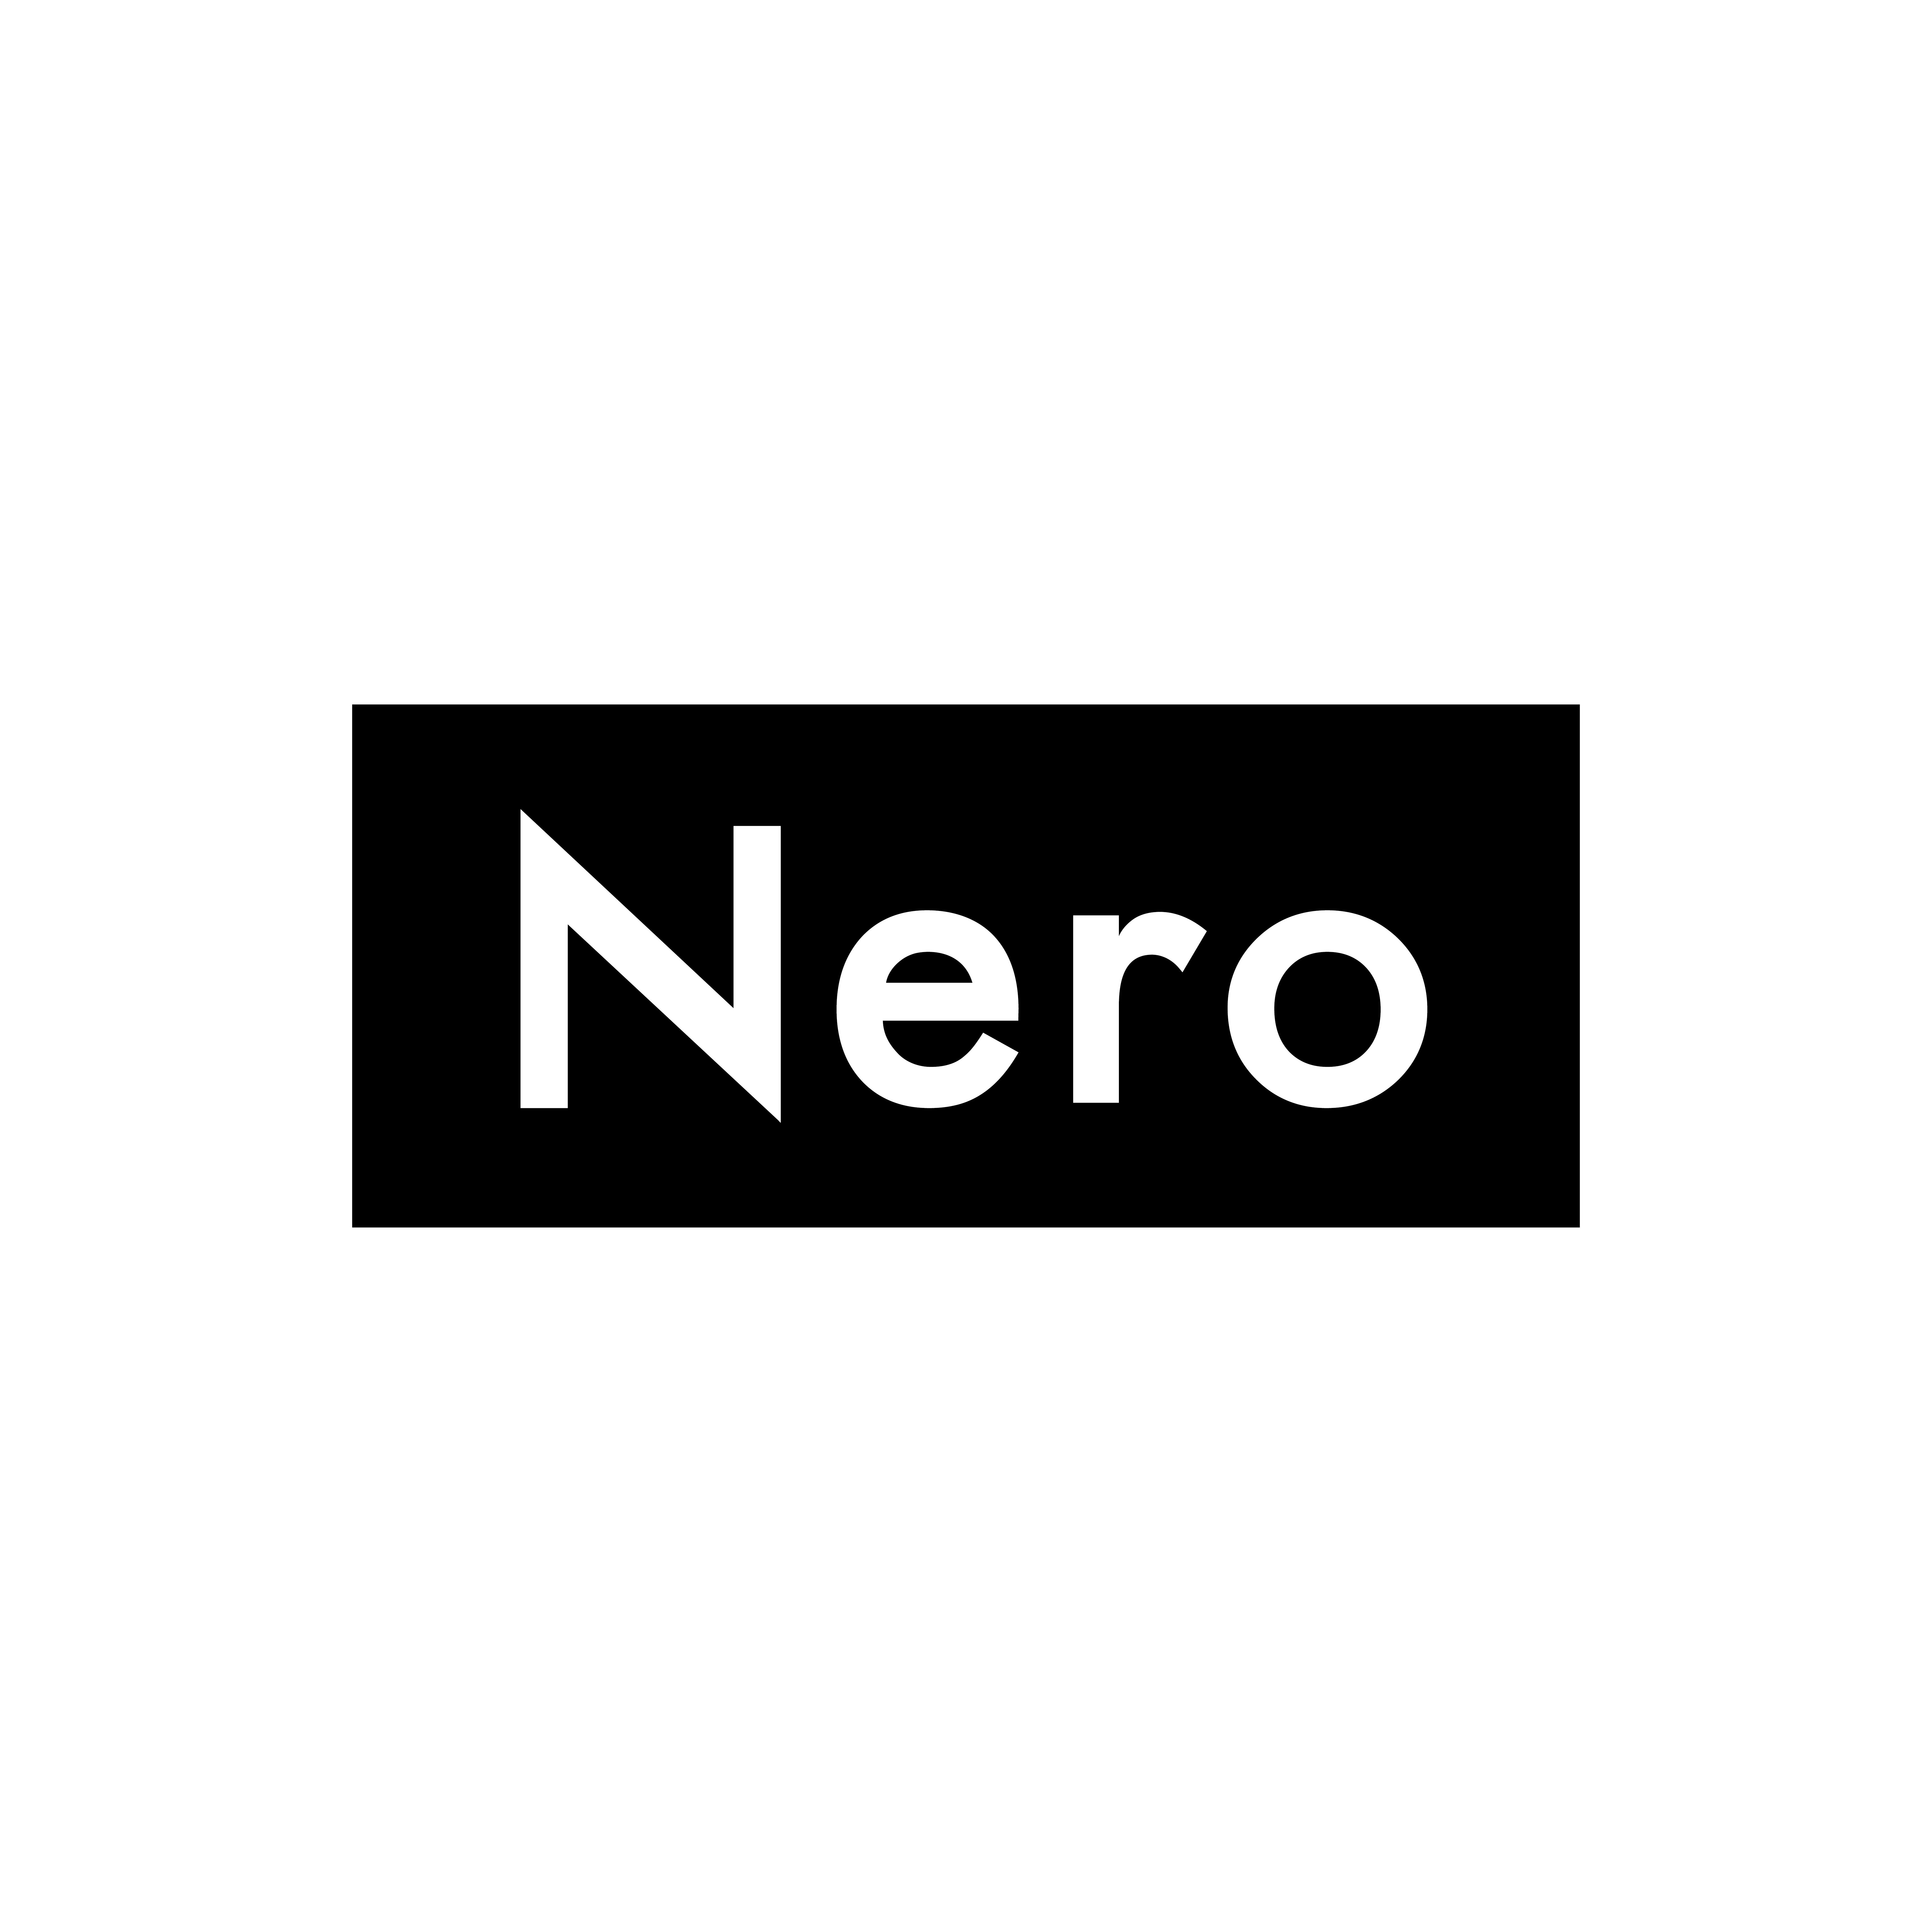 Nero doctors